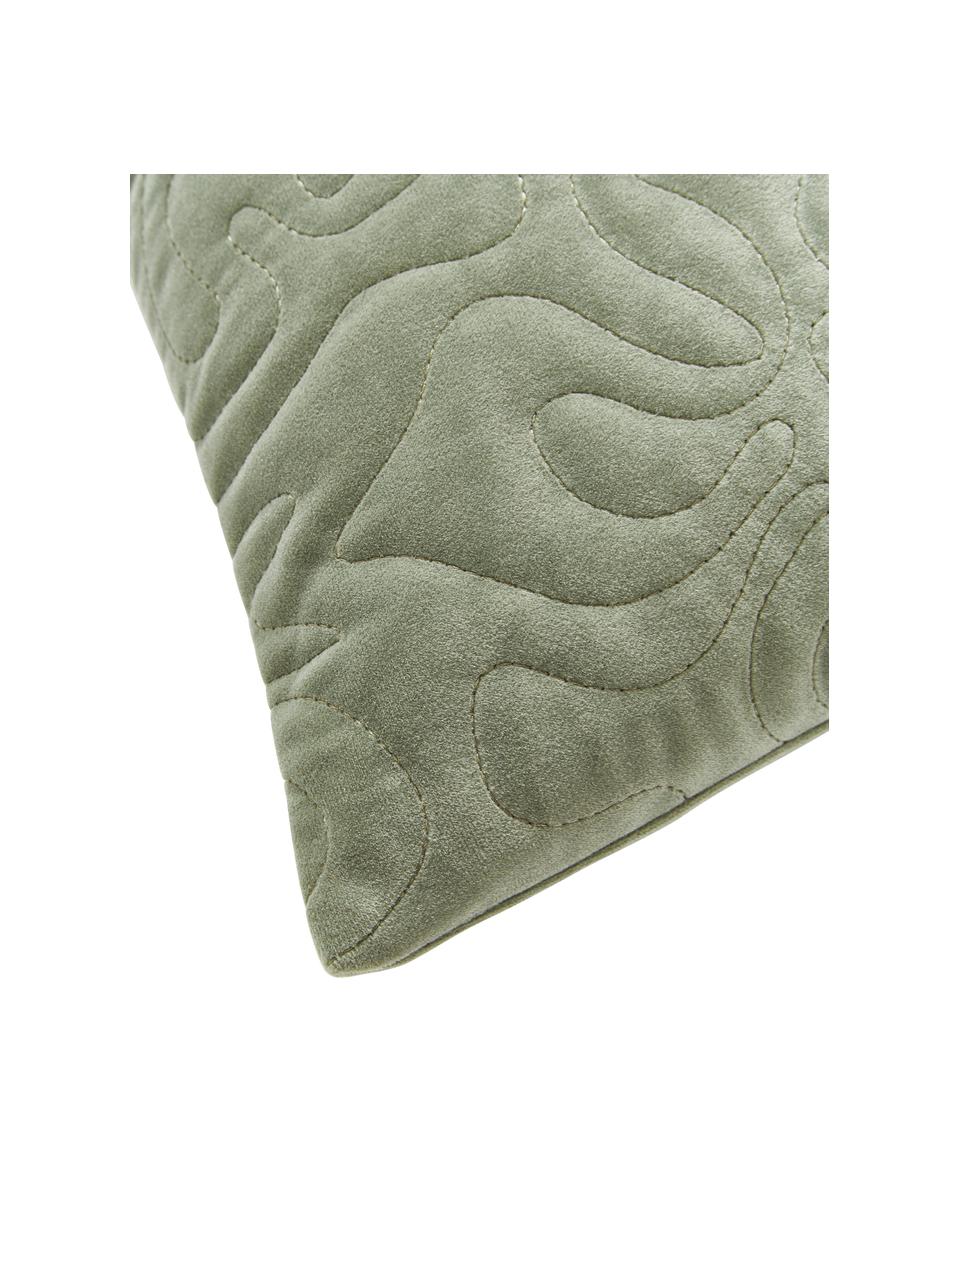 Fluwelen kussenhoes Hera met decoratie in saliegroen, 100 % gerecycled polyester, Fluweel saliegroen, B 45 x L 45 cm